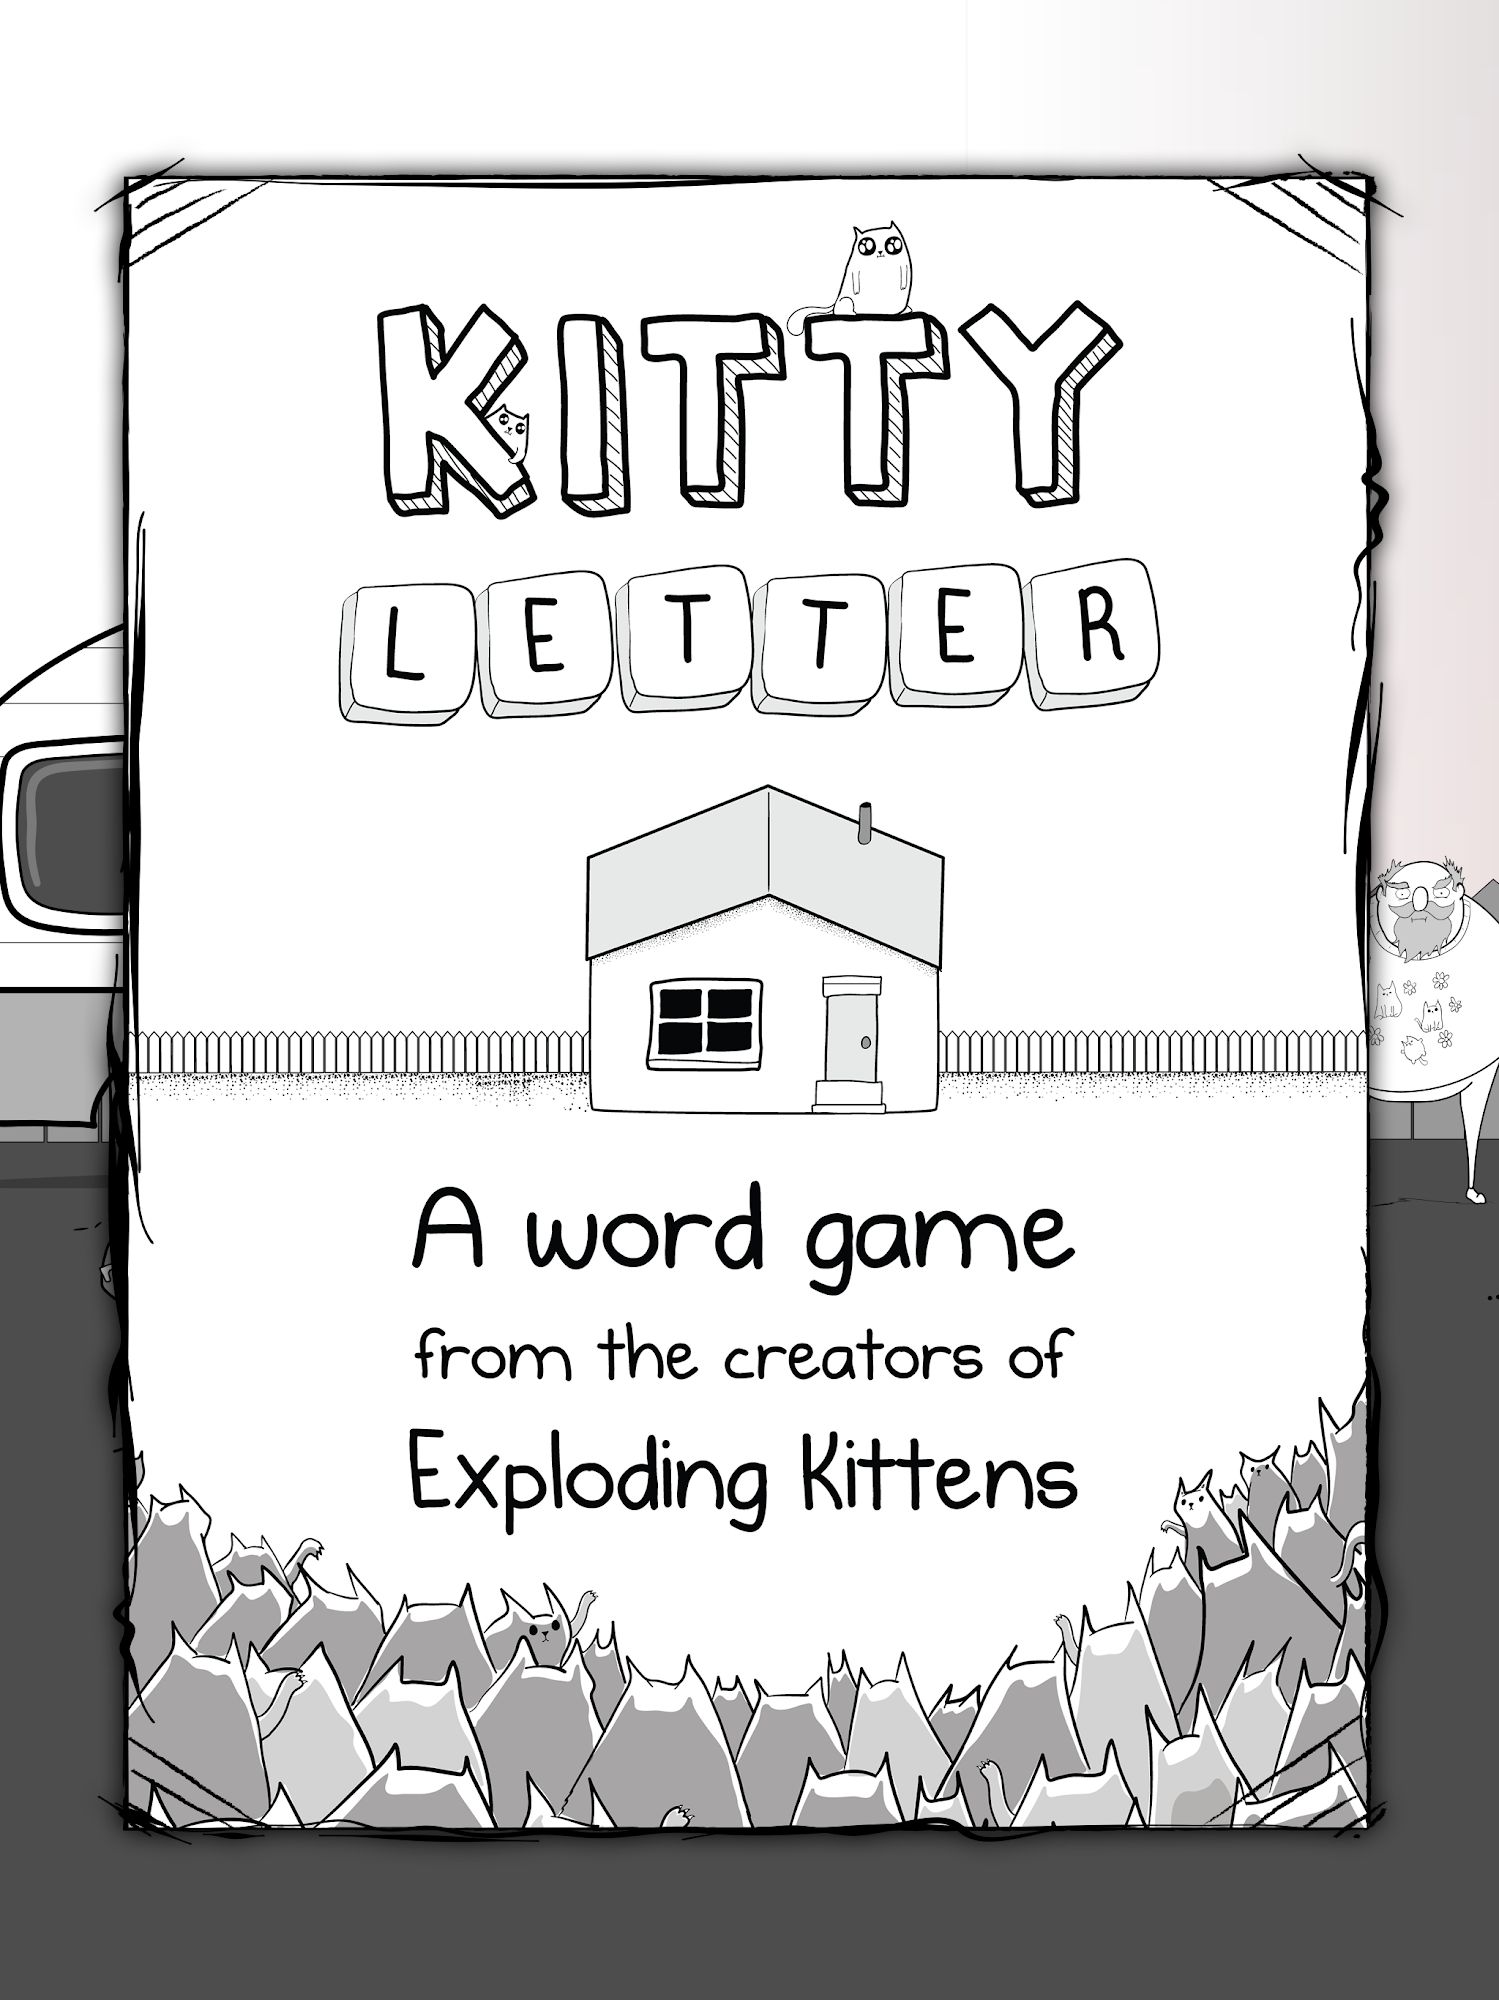 Ladda ner Kitty Letter: Android Arkadspel spel till mobilen och surfplatta.